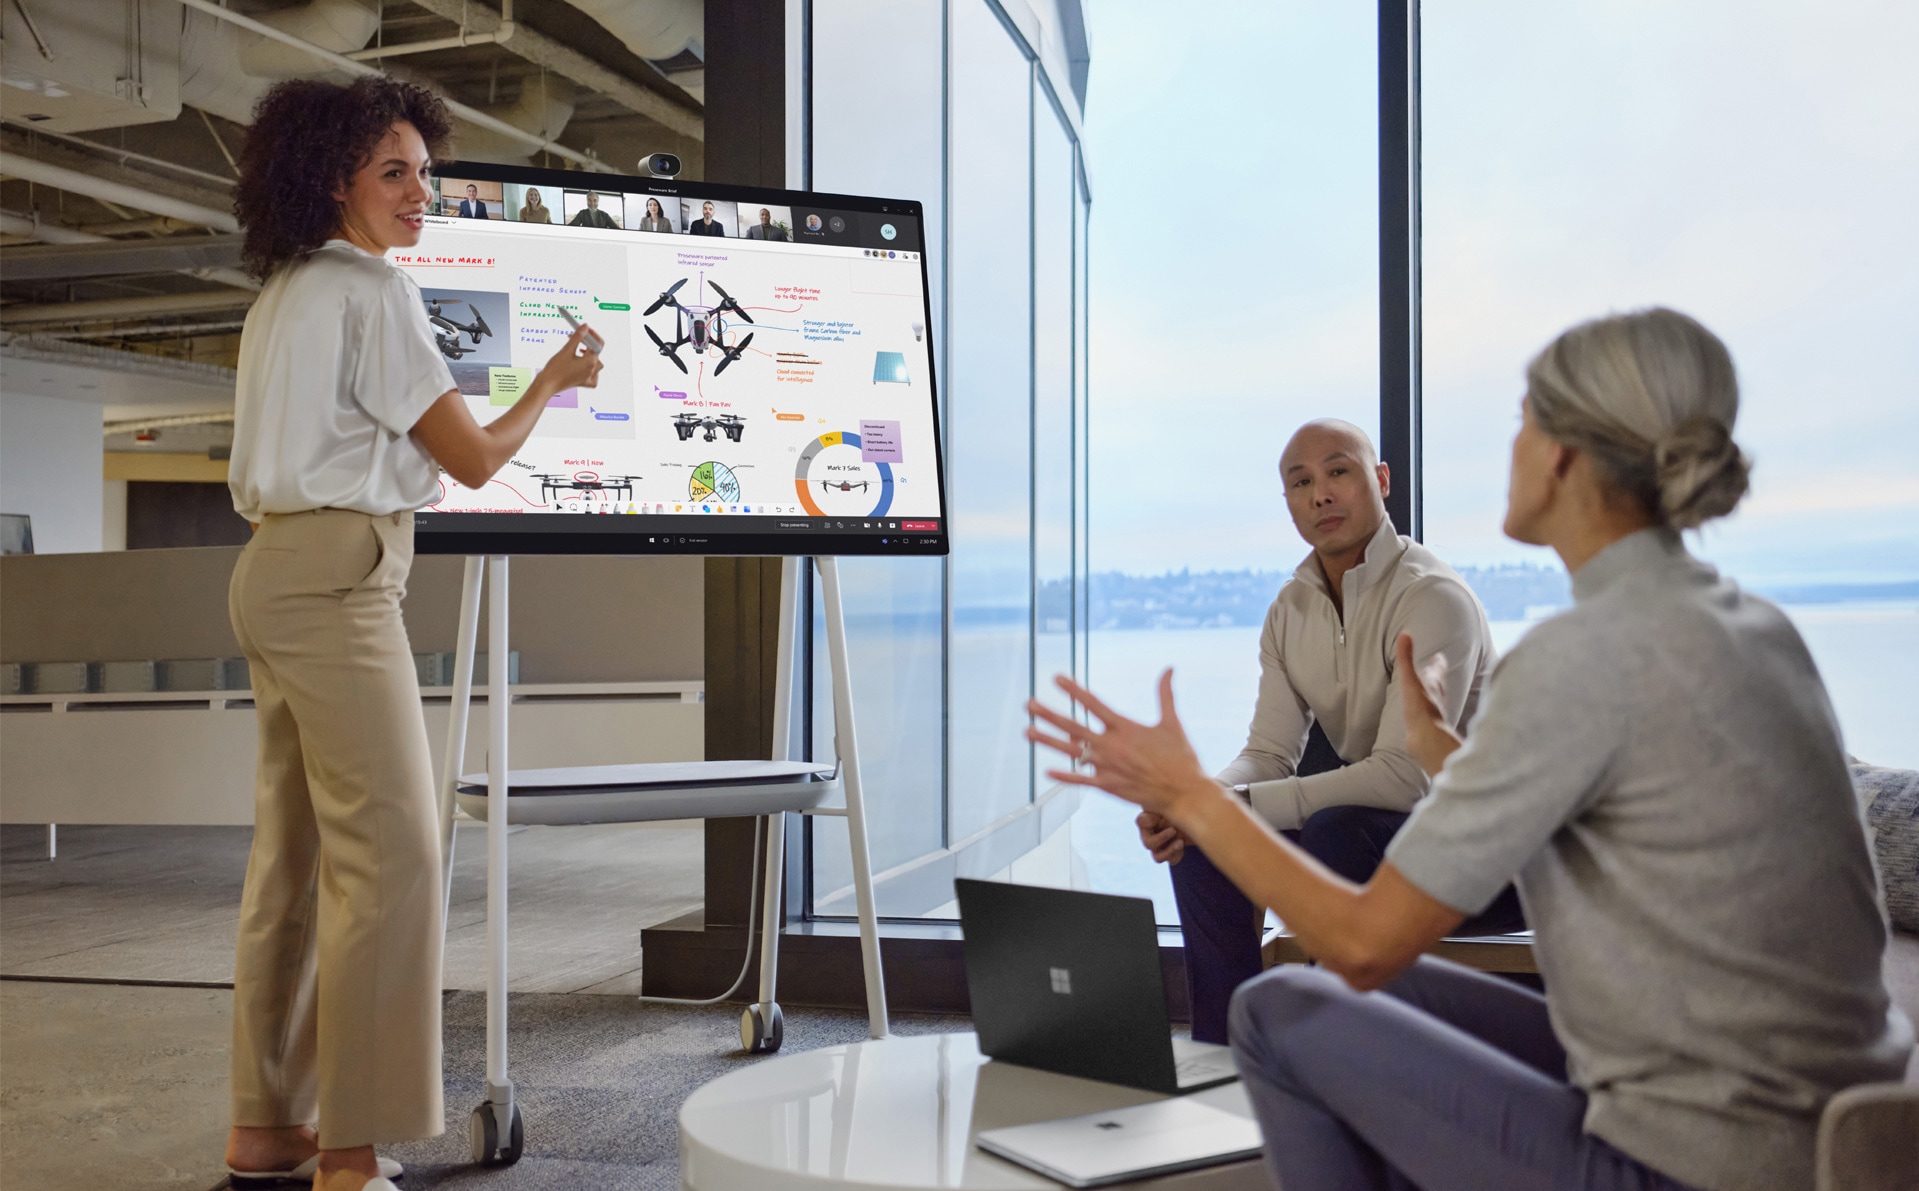 Colleghi di lavoro fisicamente presenti a una riunione in cui si sta utilizzando PowerPoint su Teams per una presentazione interagiscono con altri colleghi che li osservano collegati da remoto